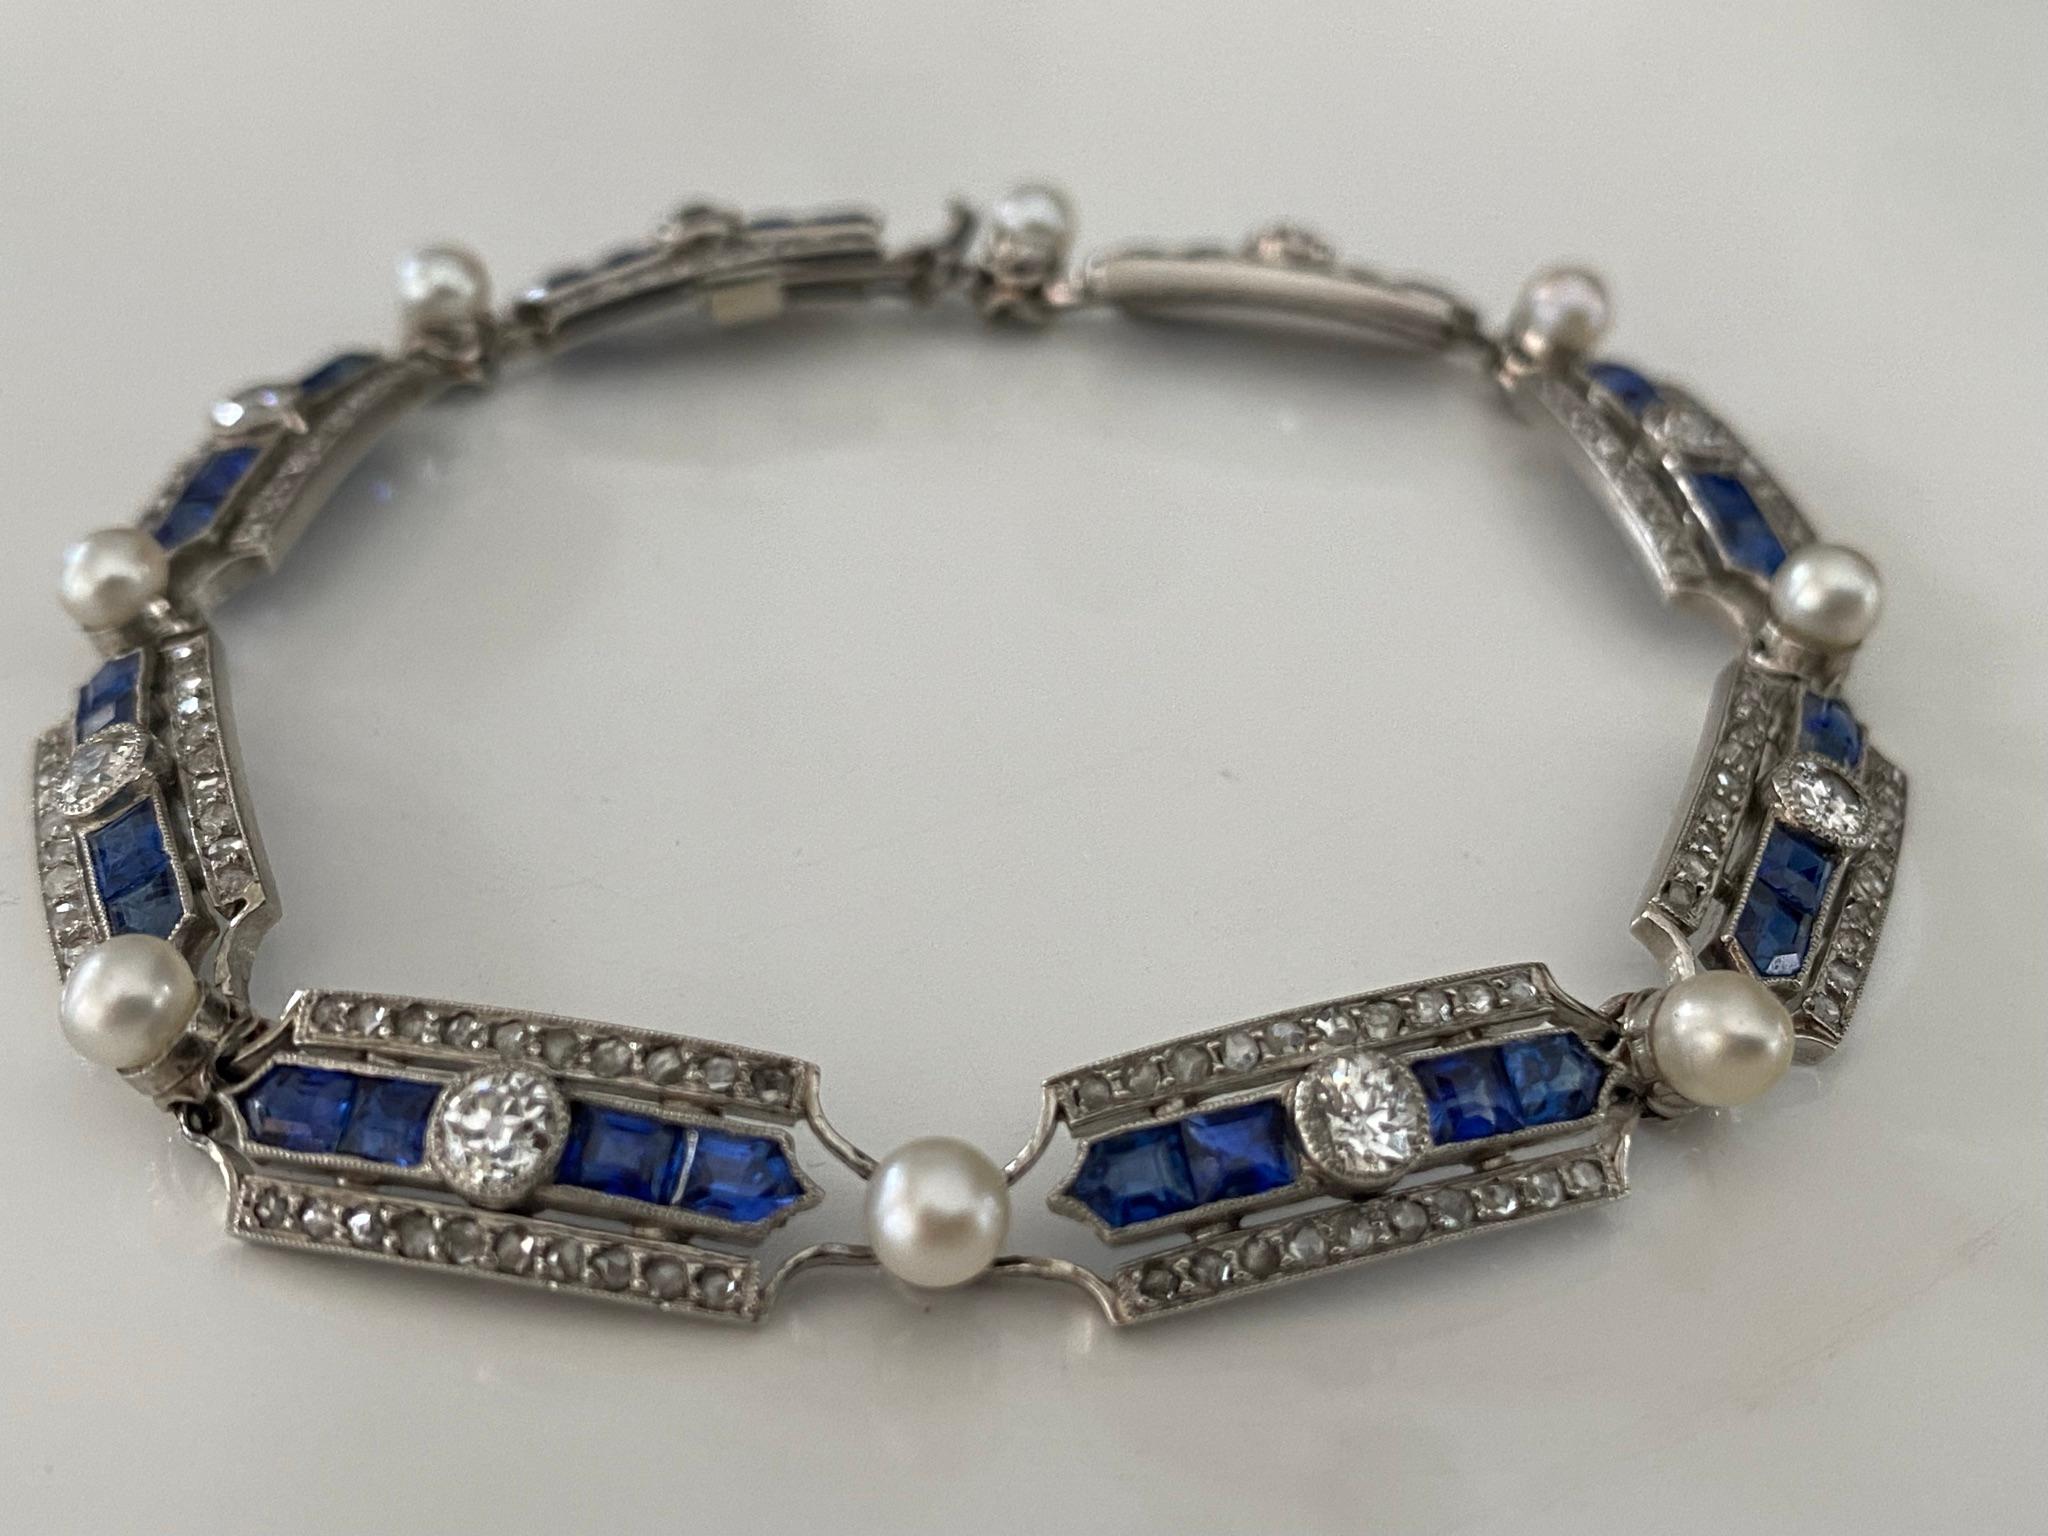 CIRCA 1910-1915, dieses prächtige antike französische Gliederarmband der Belle Epoque besteht aus einem sich wiederholenden geometrischen Muster, in dessen Zentrum ein Diamant im alteuropäischen Schliff steht, flankiert von vier kalibrierten blauen